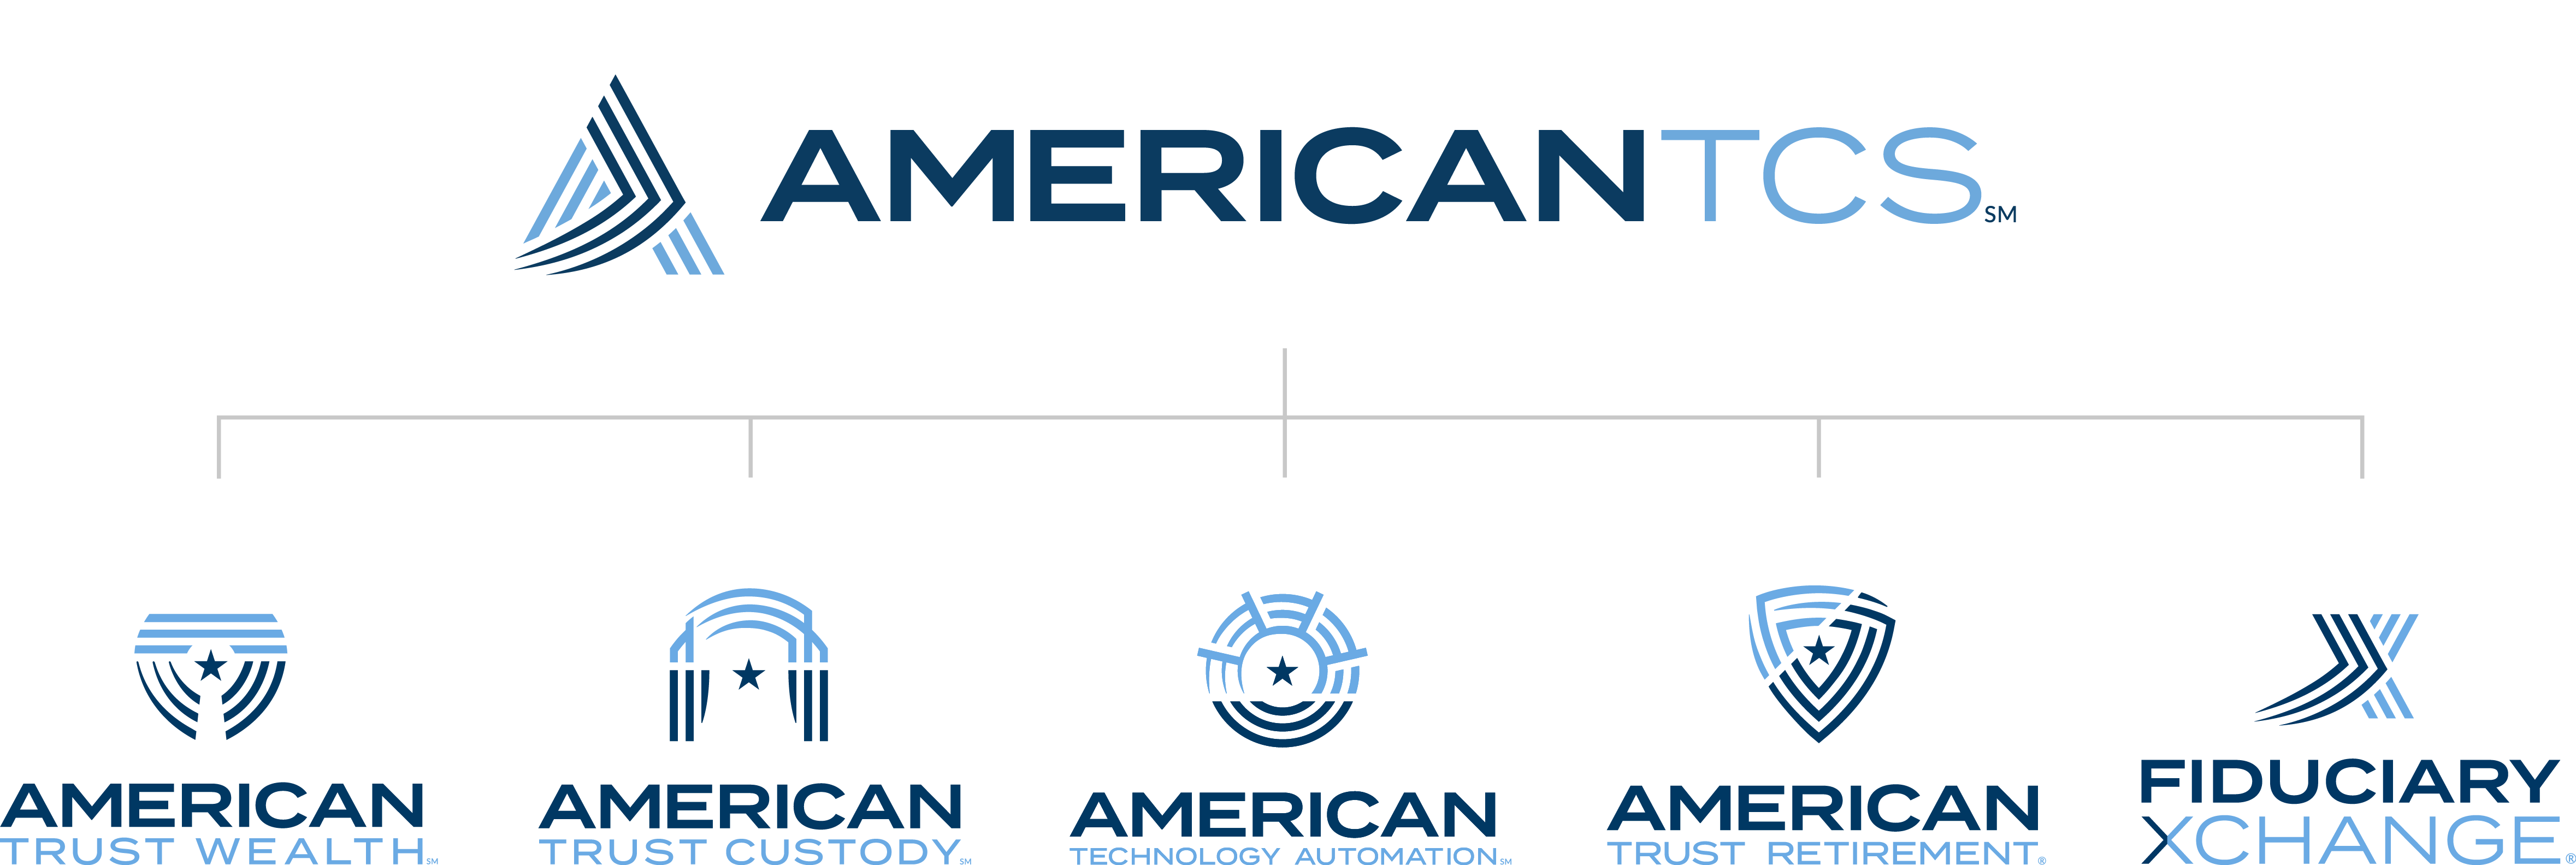 AmericanTCS Org Chart